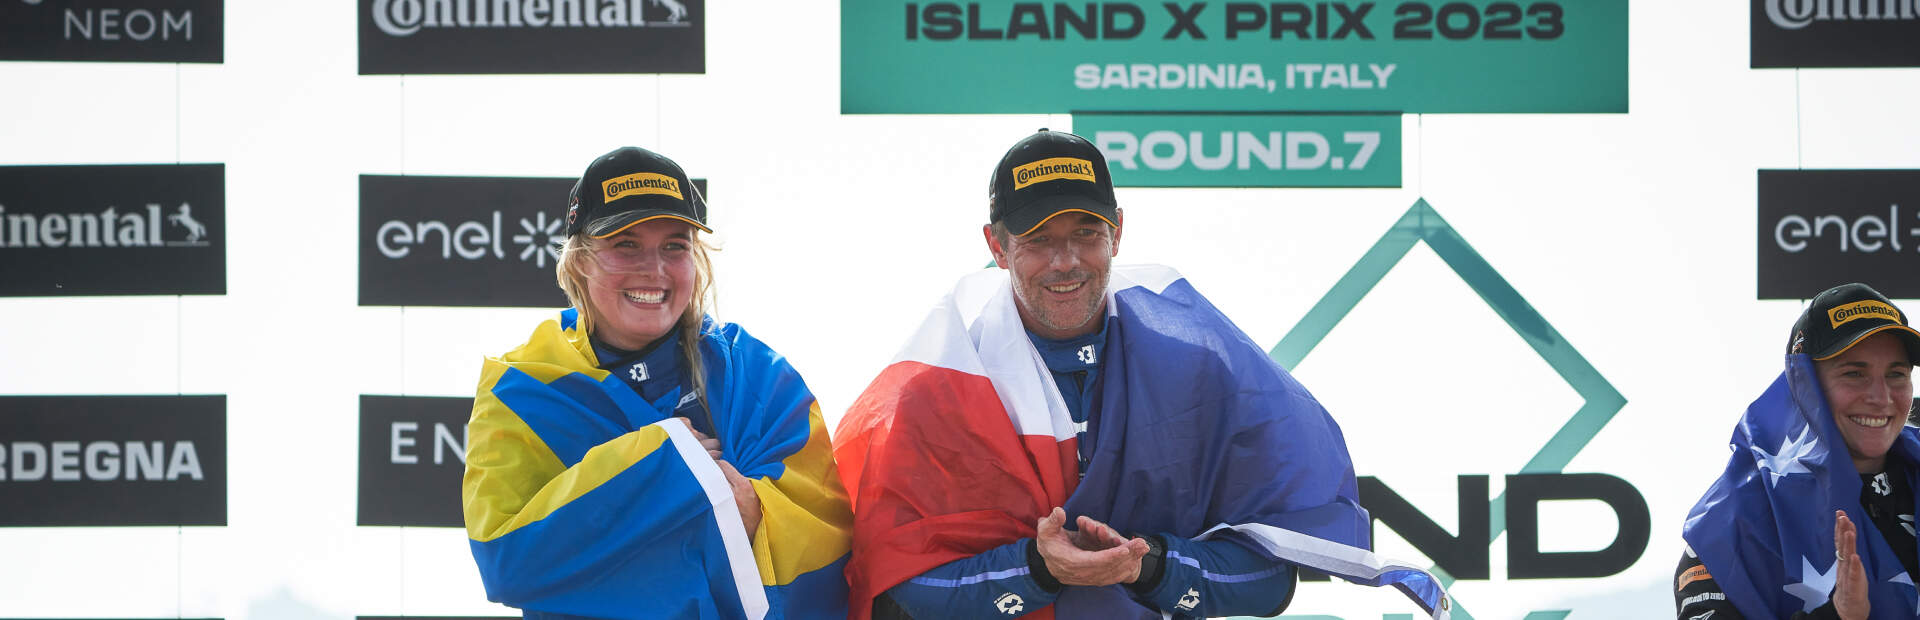 Podwójne podium dla zespołu ABT CUPRA XE w wyścigu Island X Prix na Sardynii